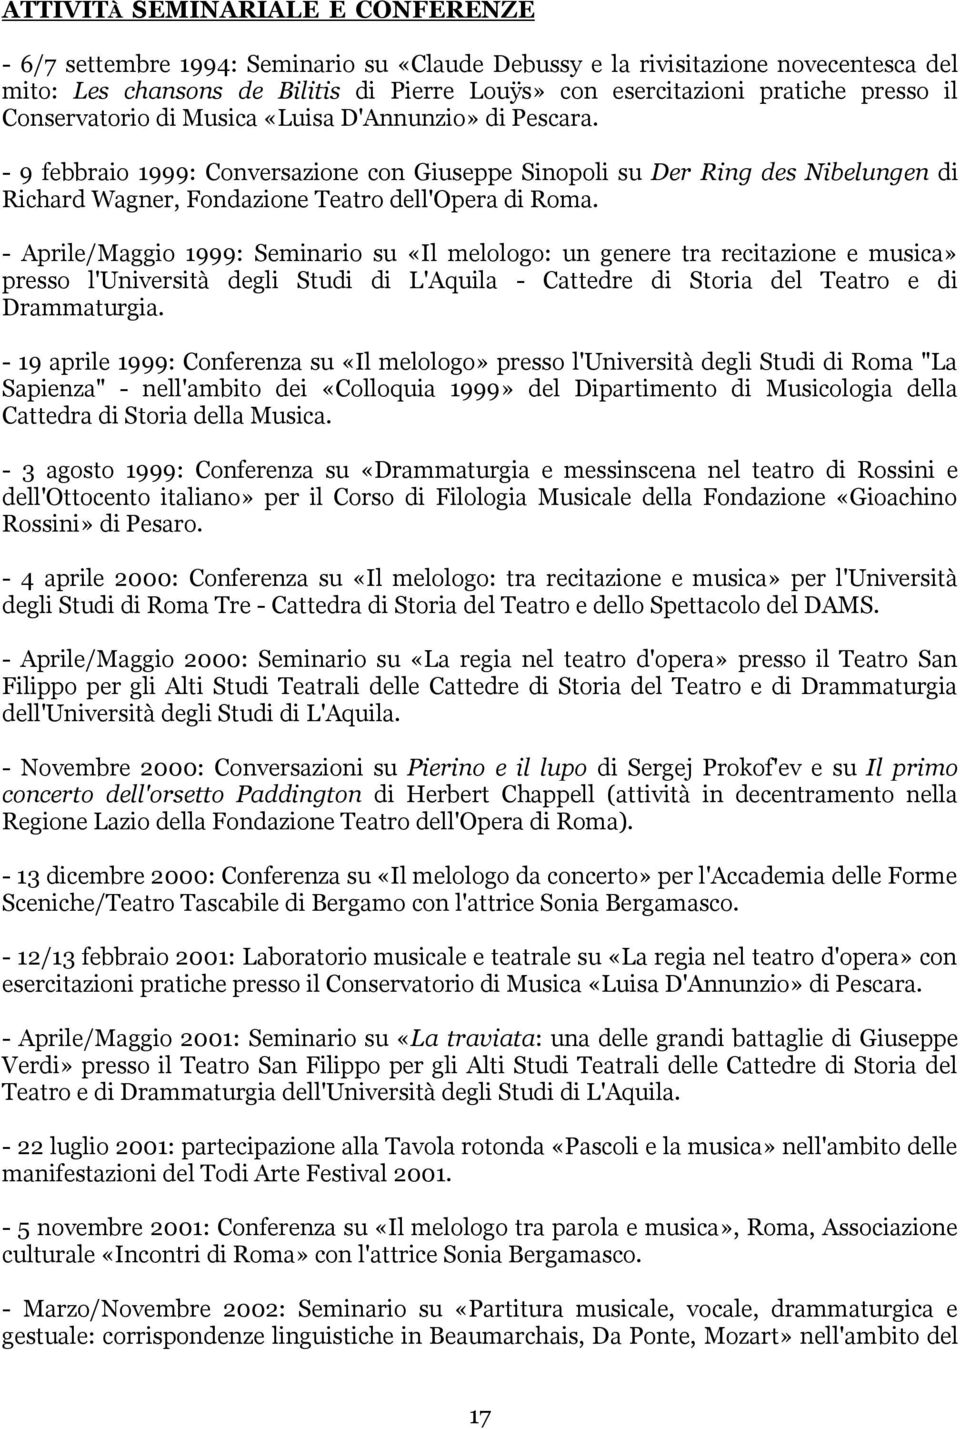 - 9 febbraio 1999: Conversazione con Giuseppe Sinopoli su Der Ring des Nibelungen di Richard Wagner, Fondazione Teatro dell'opera di Roma.